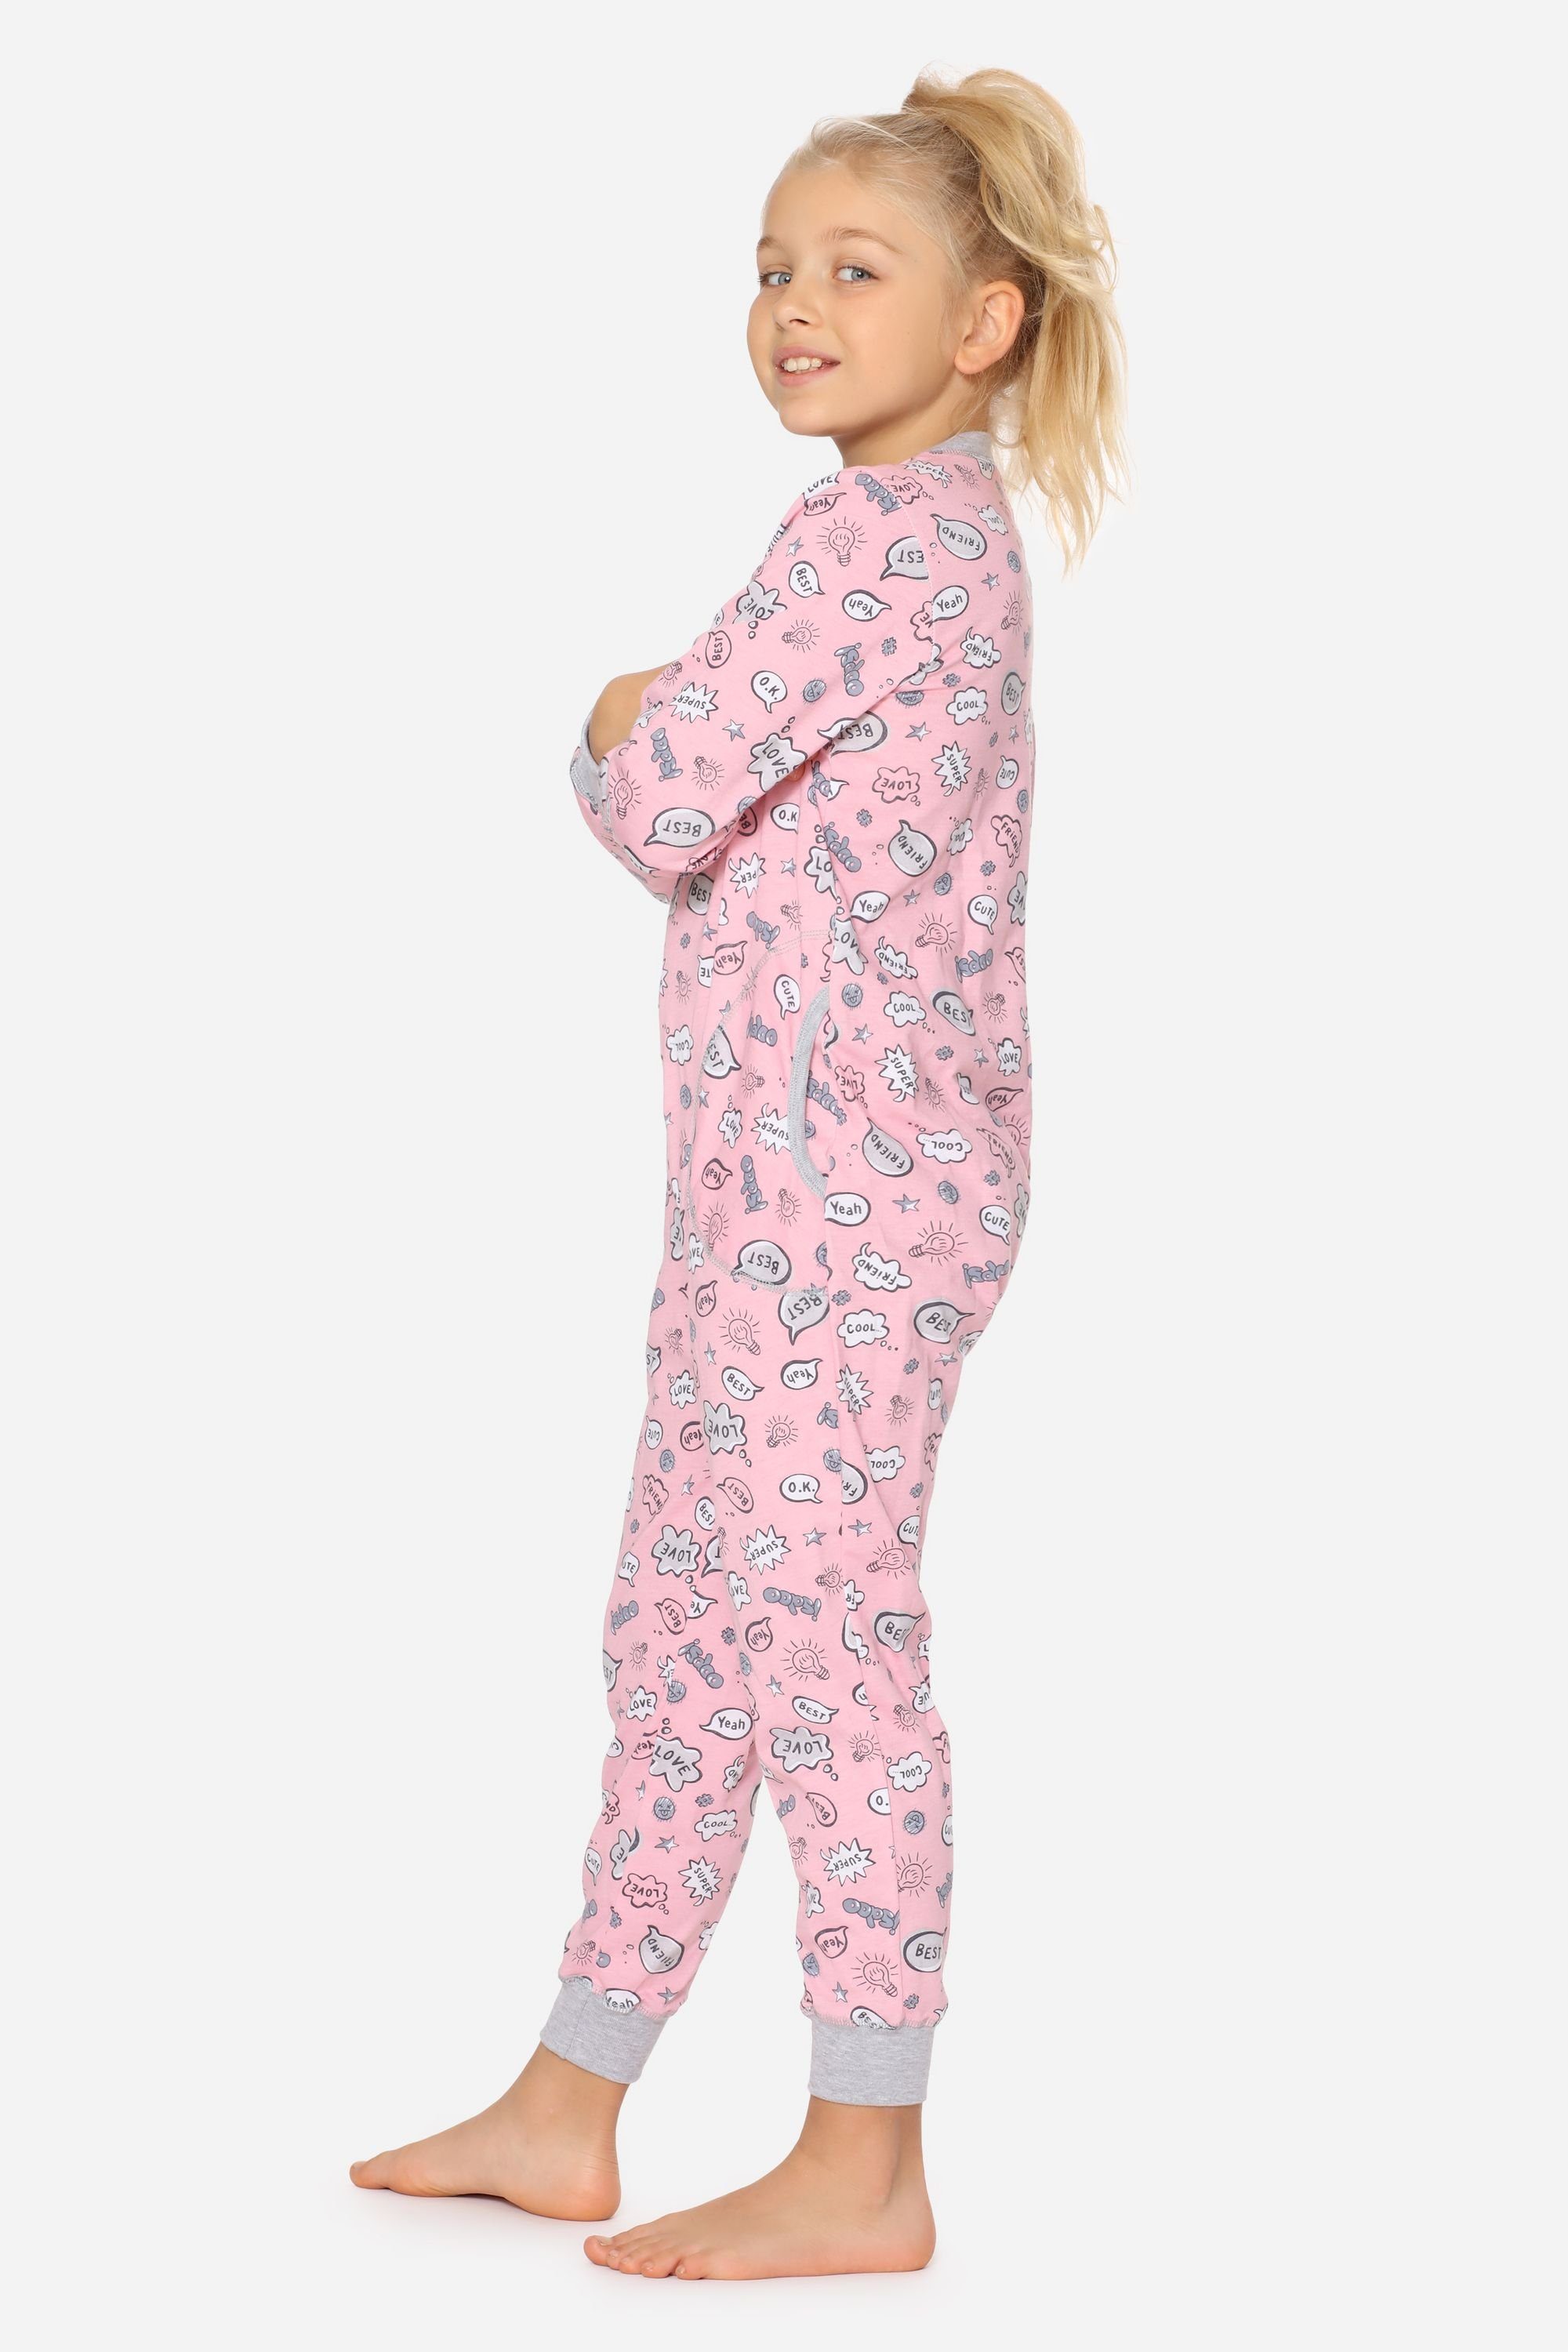 MS10-186 Schlafanzug Merry Mädchen Schlafanzug Wolken Style Rosa Jumpsuit